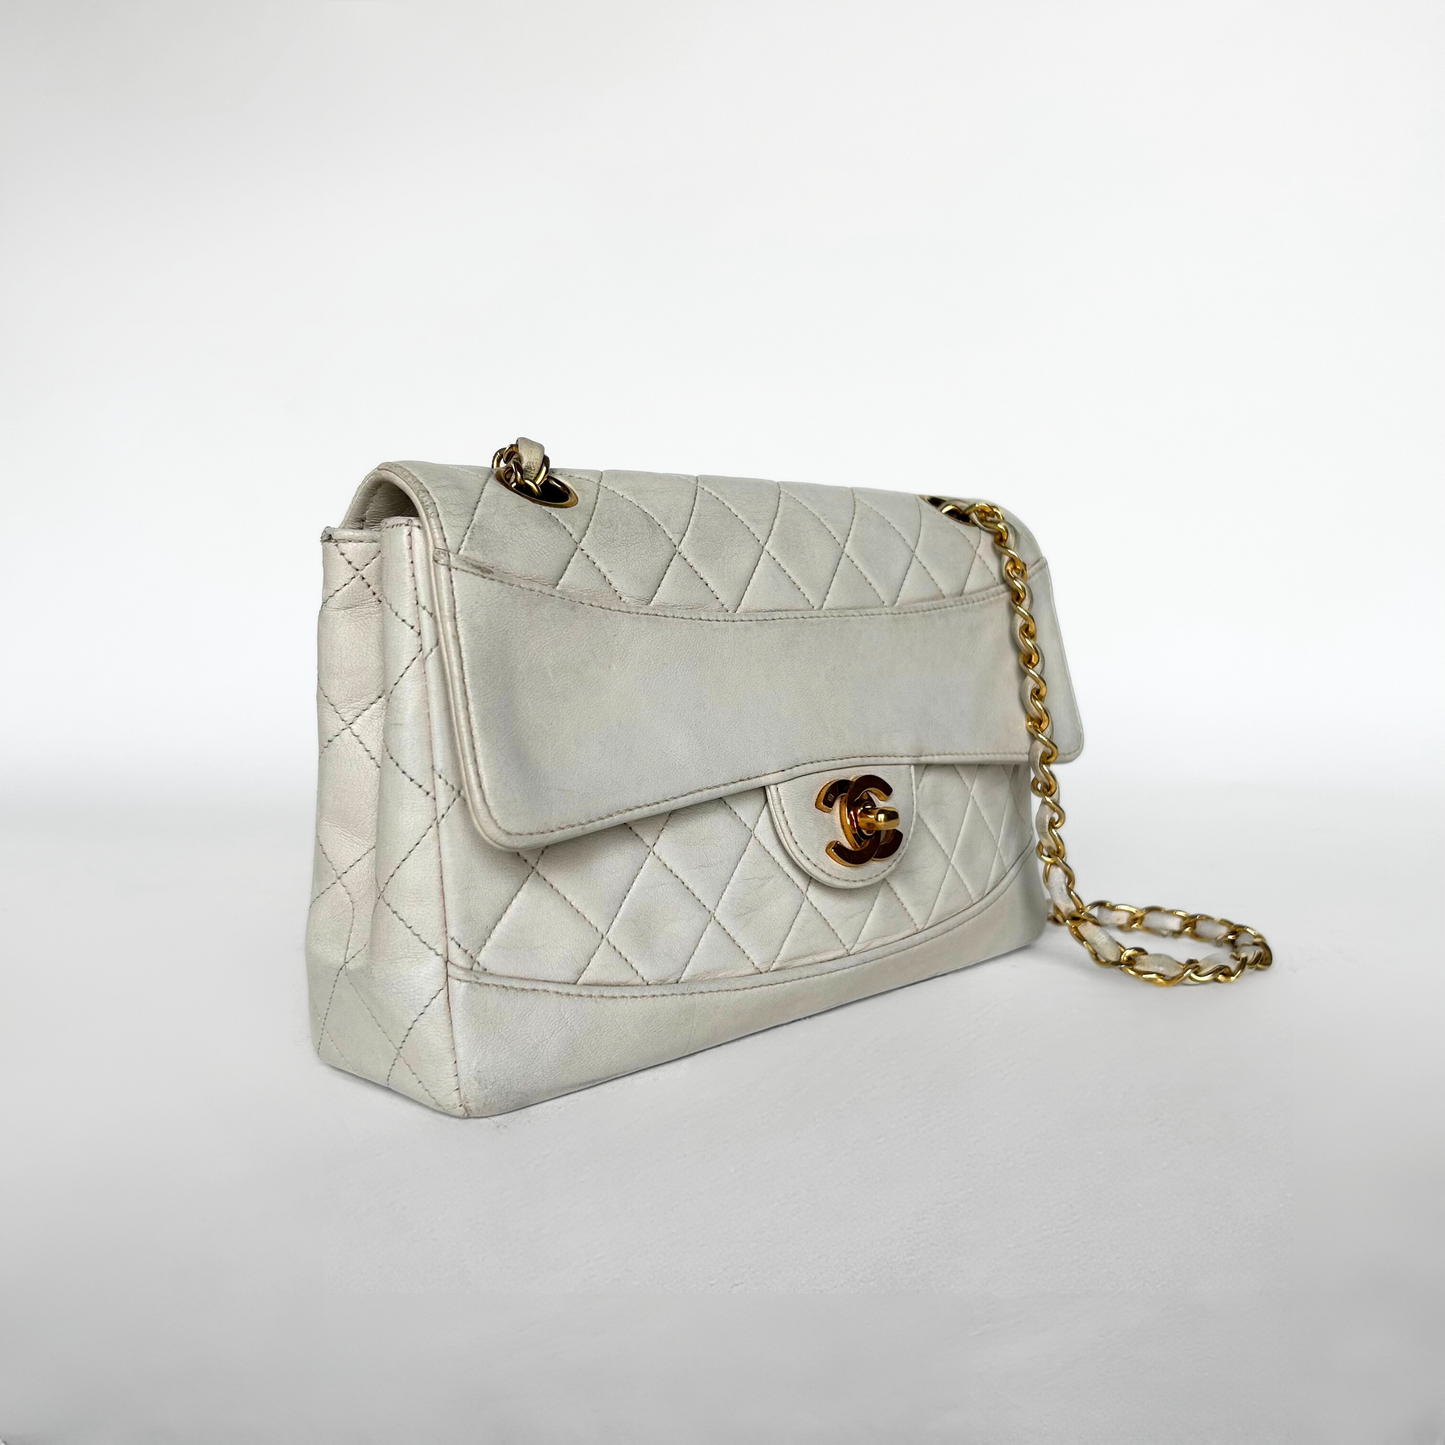 Chanel Chanel Sæsonbestemt single Flap Bag Mellem lammeskindslæder - Skuldertasker - Etoile Luxury Vintage